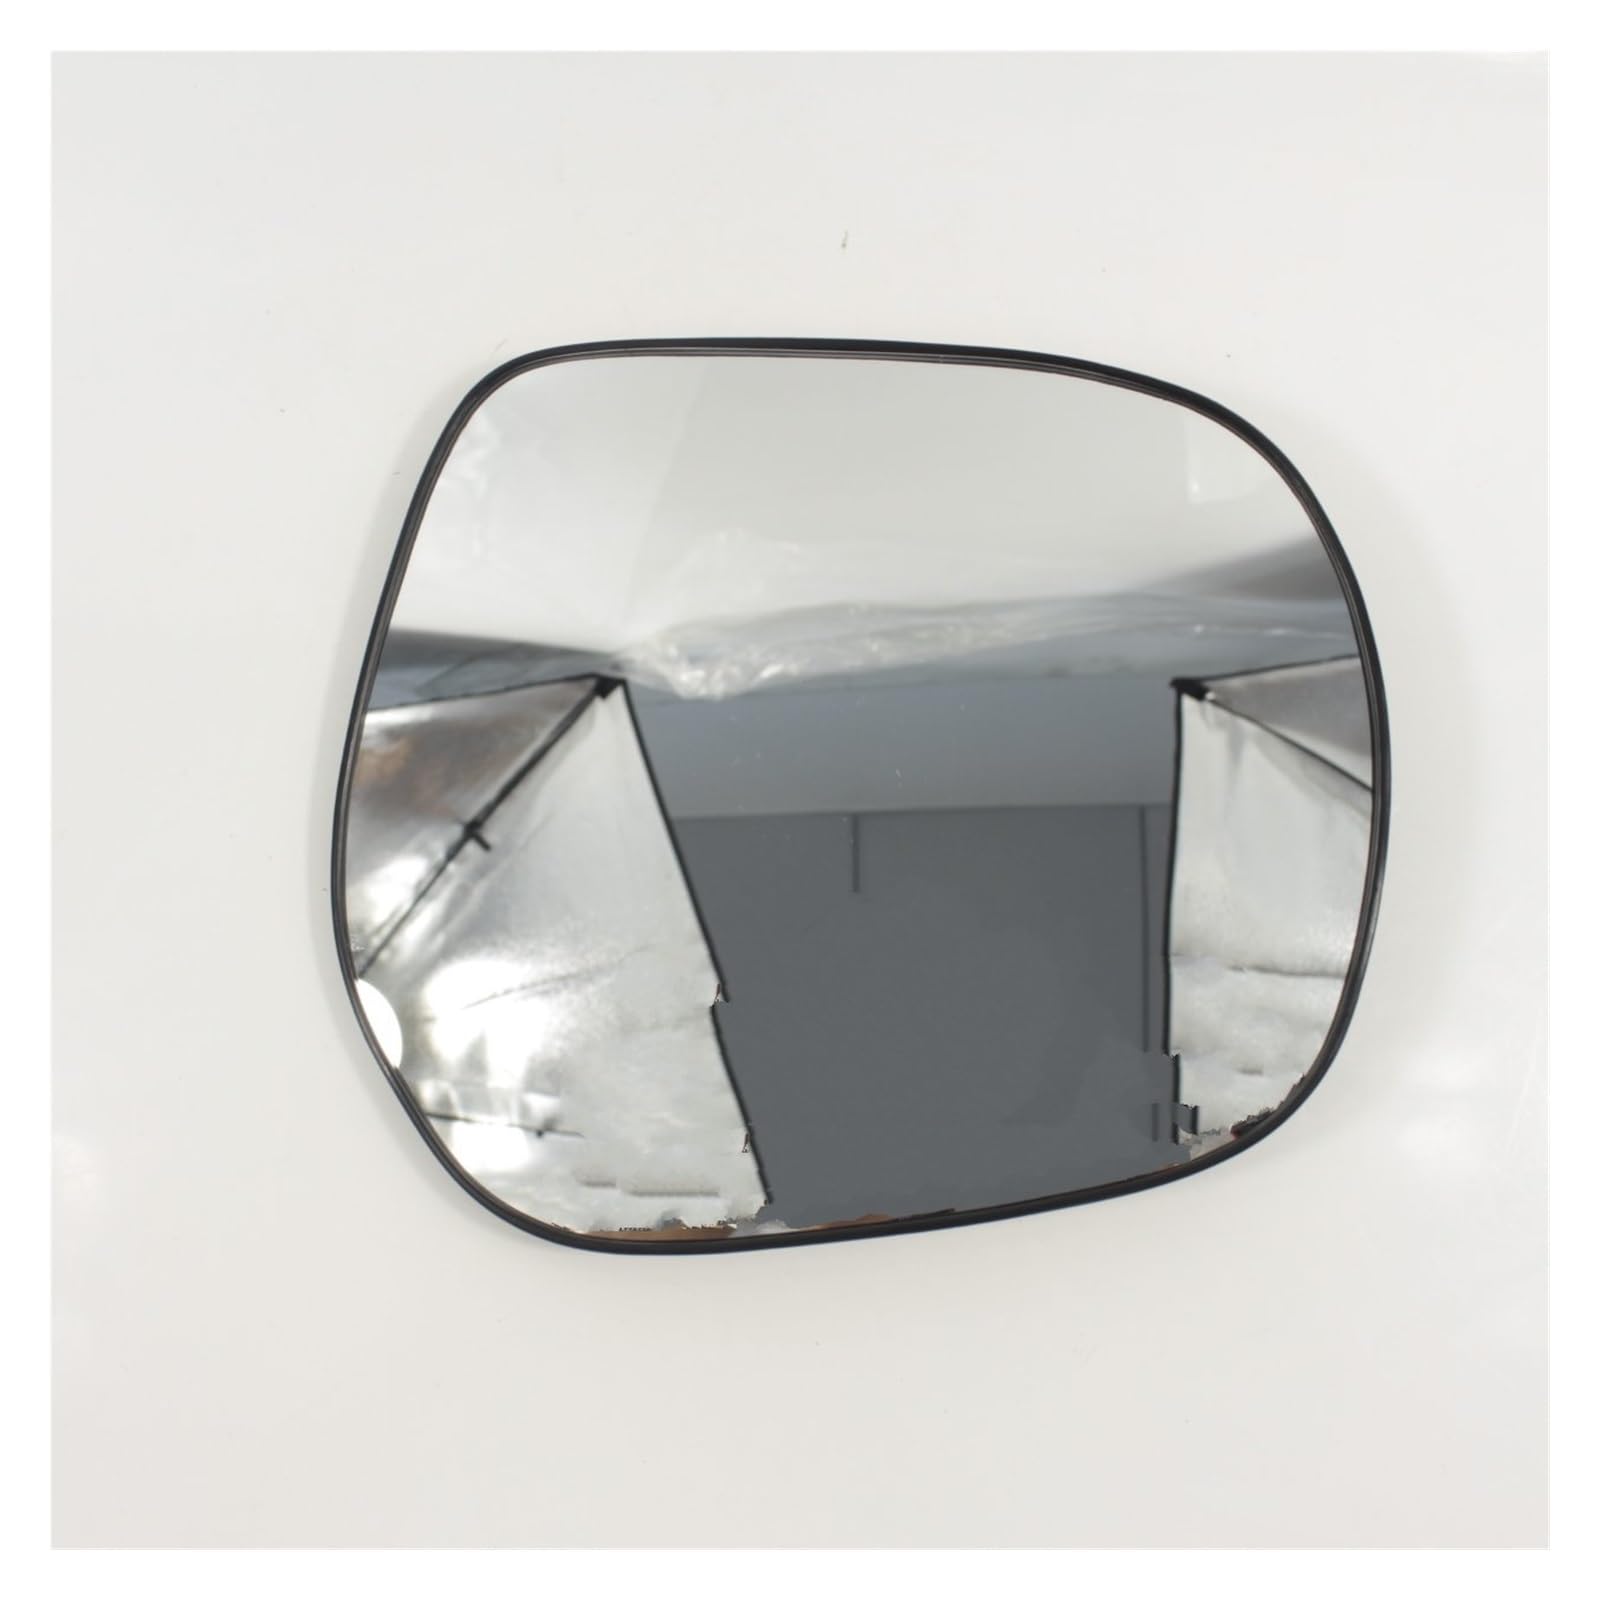 Spiegelglas Ersatz Für Toyota Für Land Für Cruiser Für Prado 150 Serie 2010-2018 Auto Tür Flügel Spiegel Glas Spiegelglas (Farbe : Right side) von MACUN